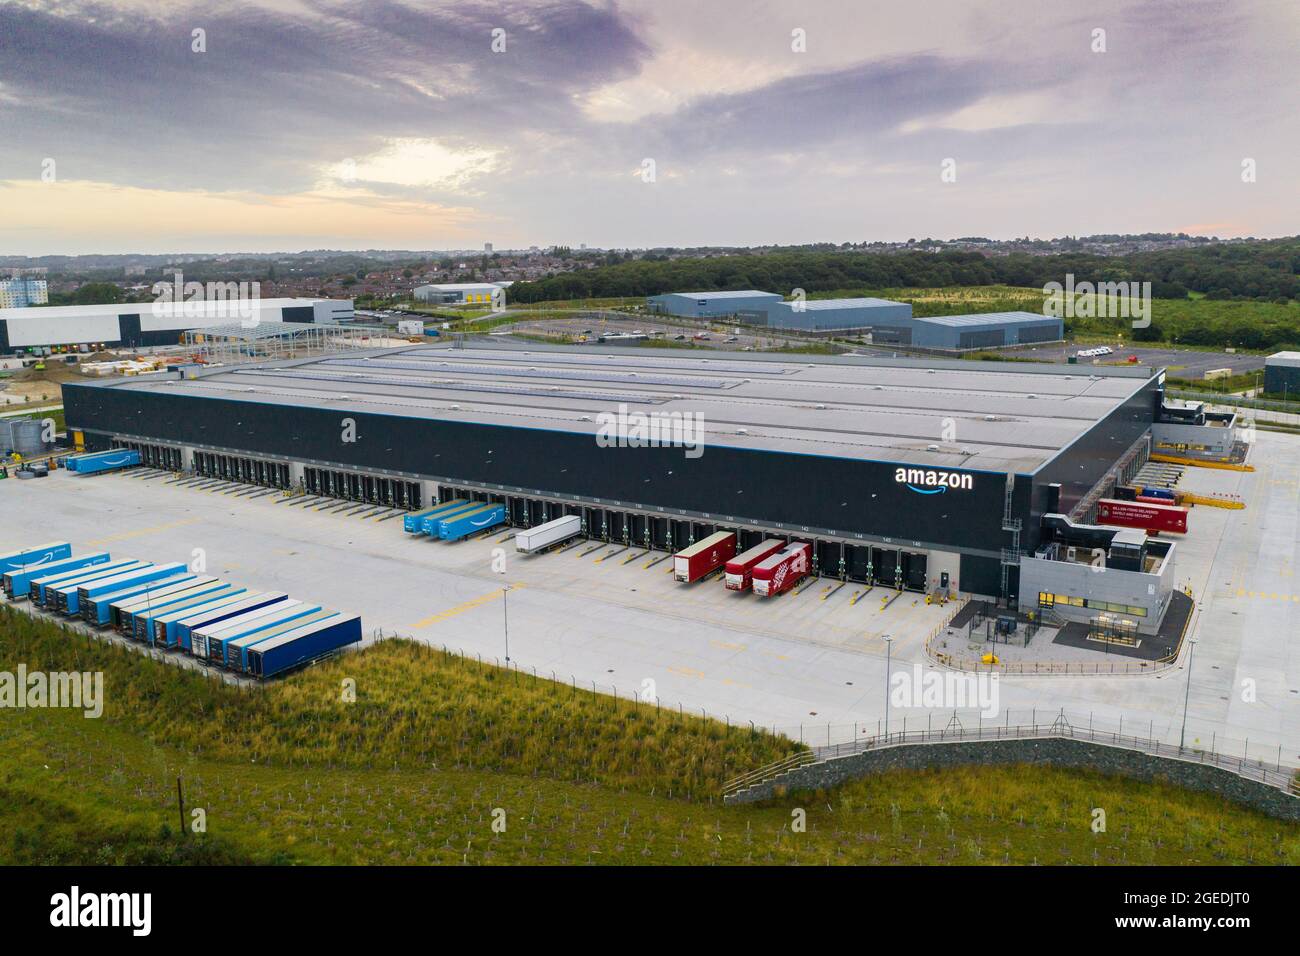 LEEDS, GROSSBRITANNIEN - 13. AUGUST 2021. Luftaufnahme des Amazon Lagerhauses und Versandzentrums in Leeds, West Yorkshire. Stockfoto